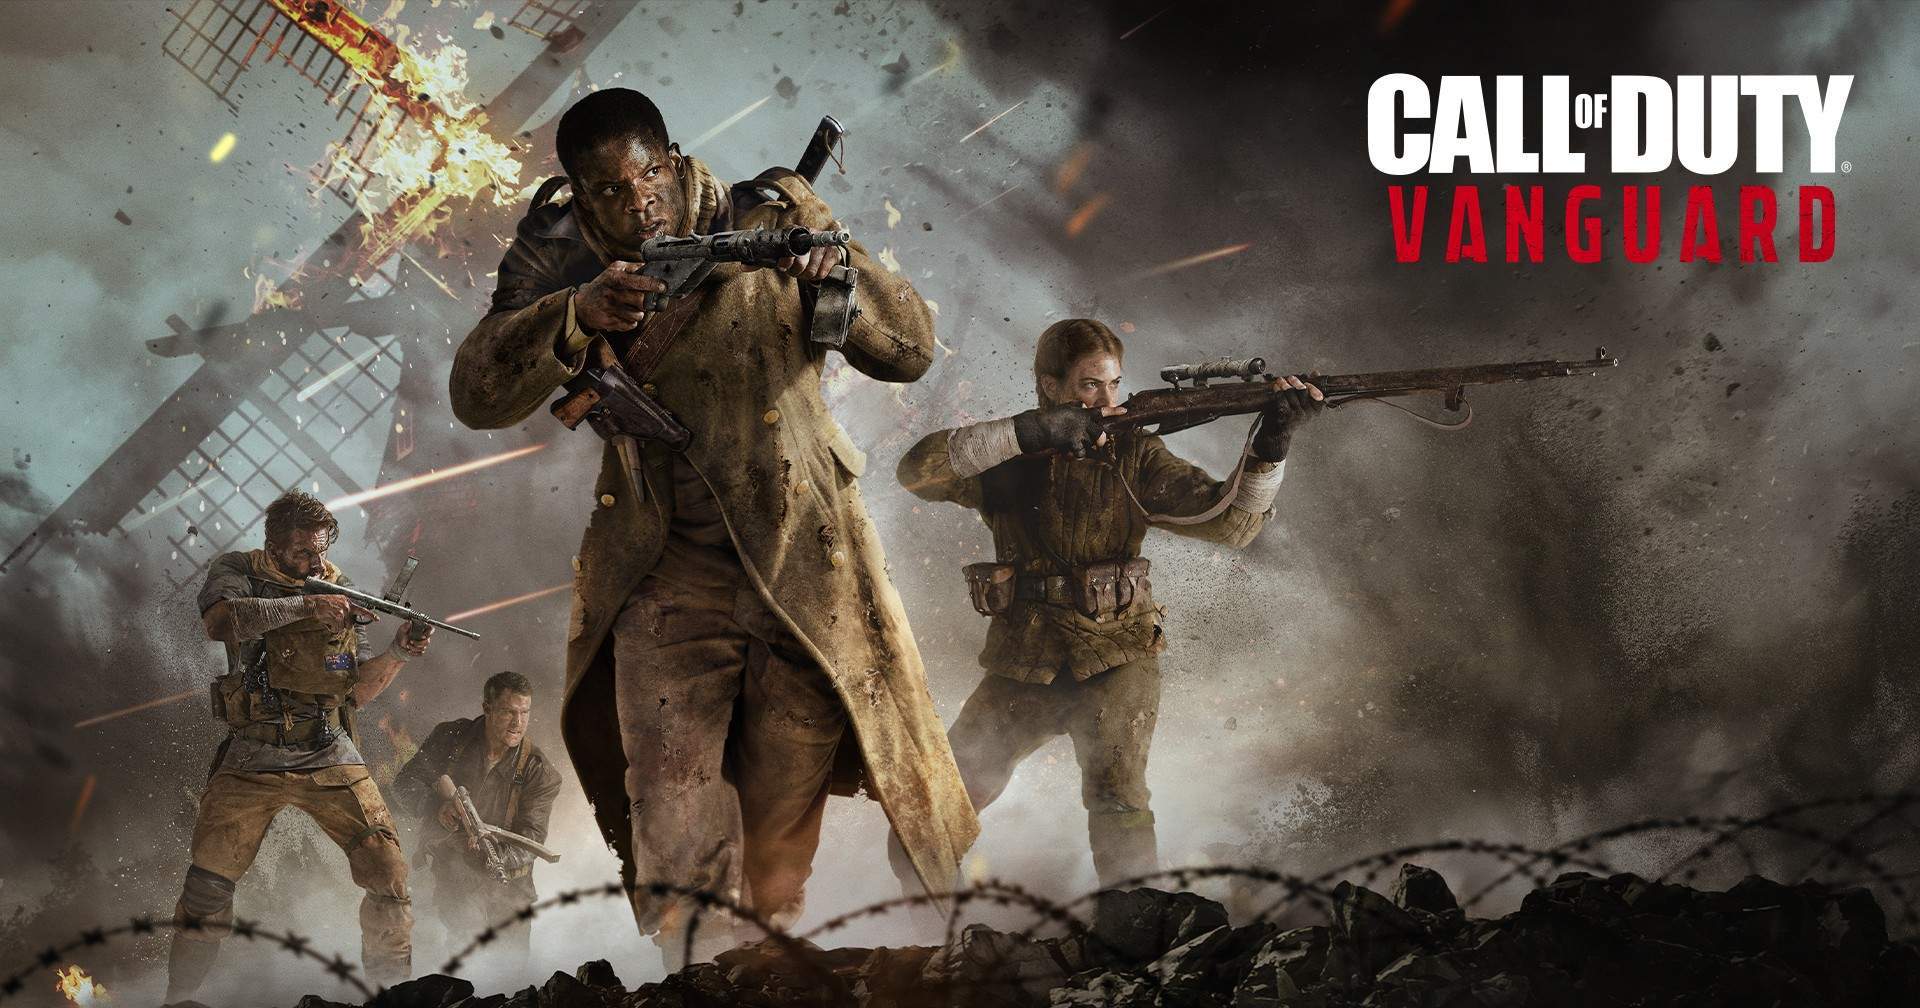 ผู้เล่น Call of Duty: Vanguard เจอคนโกง หลังเกมเปิดเบต้ามาได้ไม่นาน